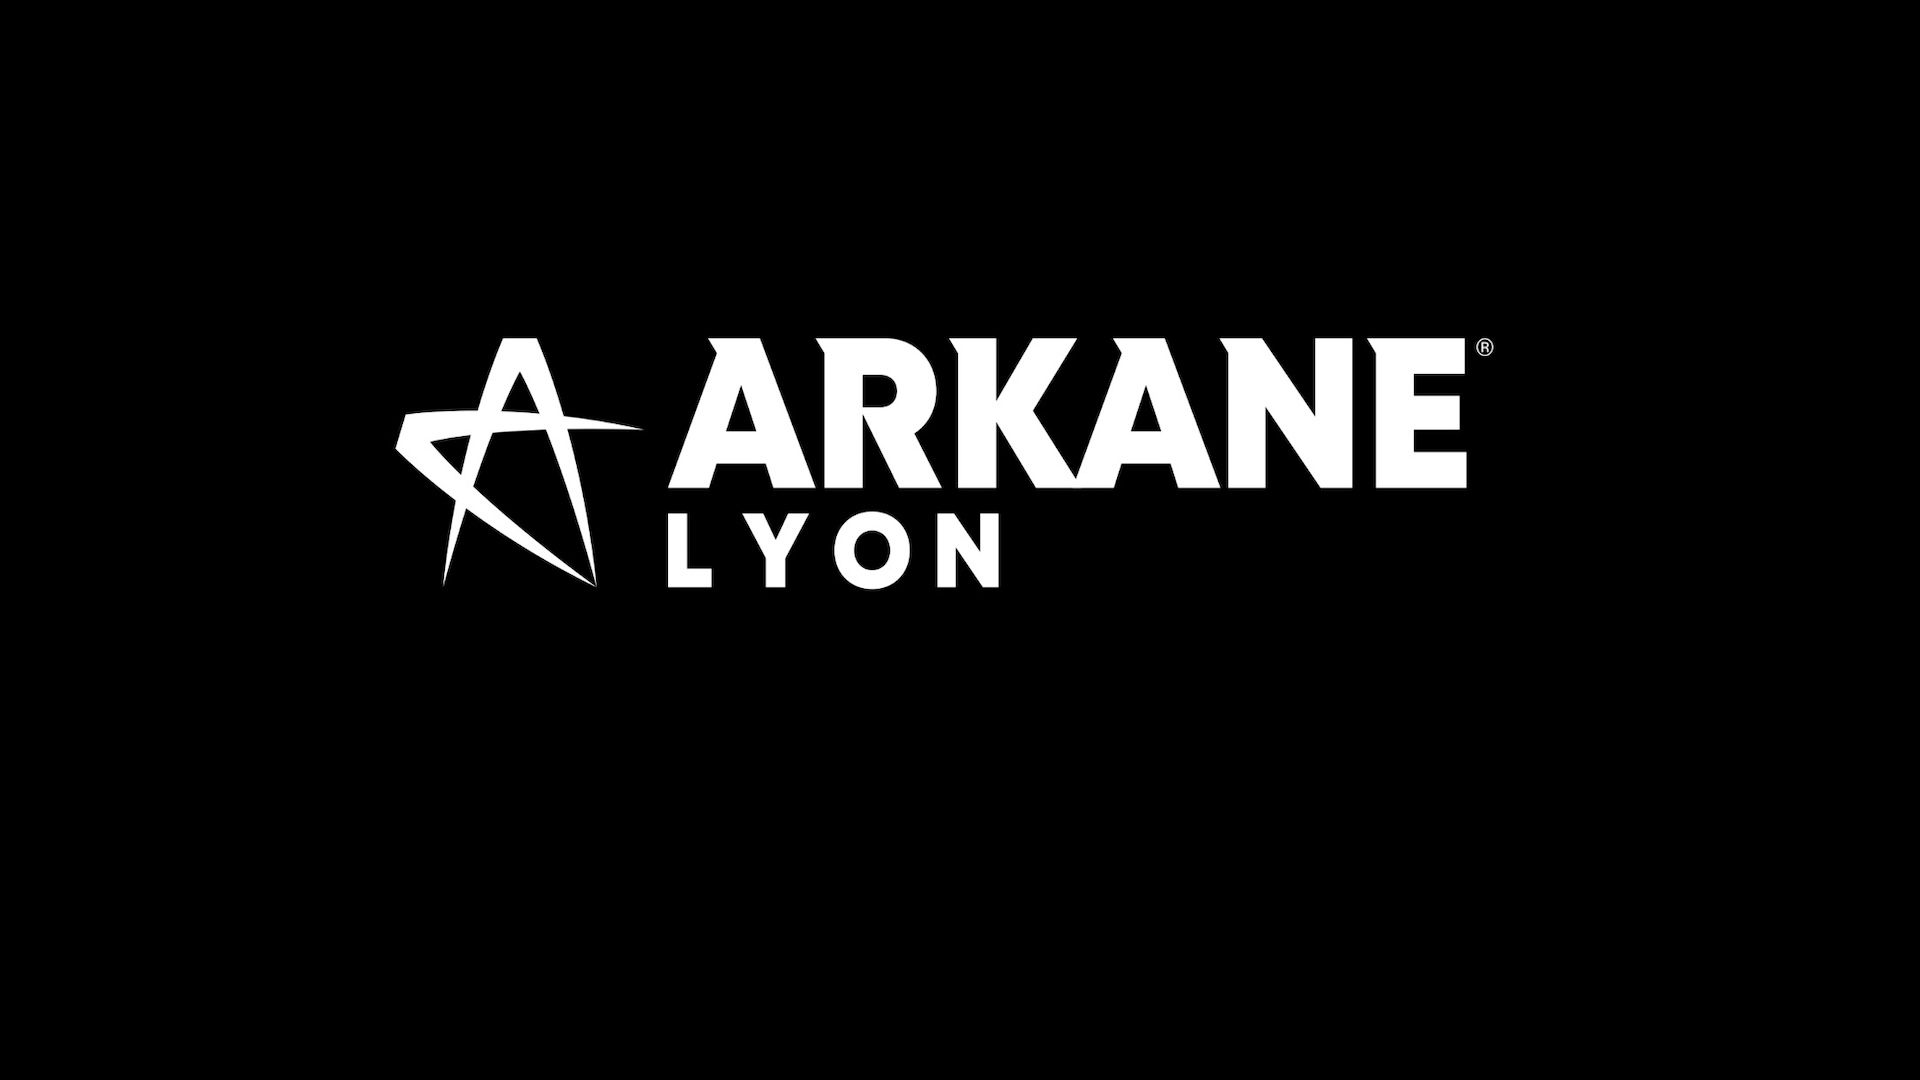 לוגו Arcane Lyon בלבן על רקע שחור